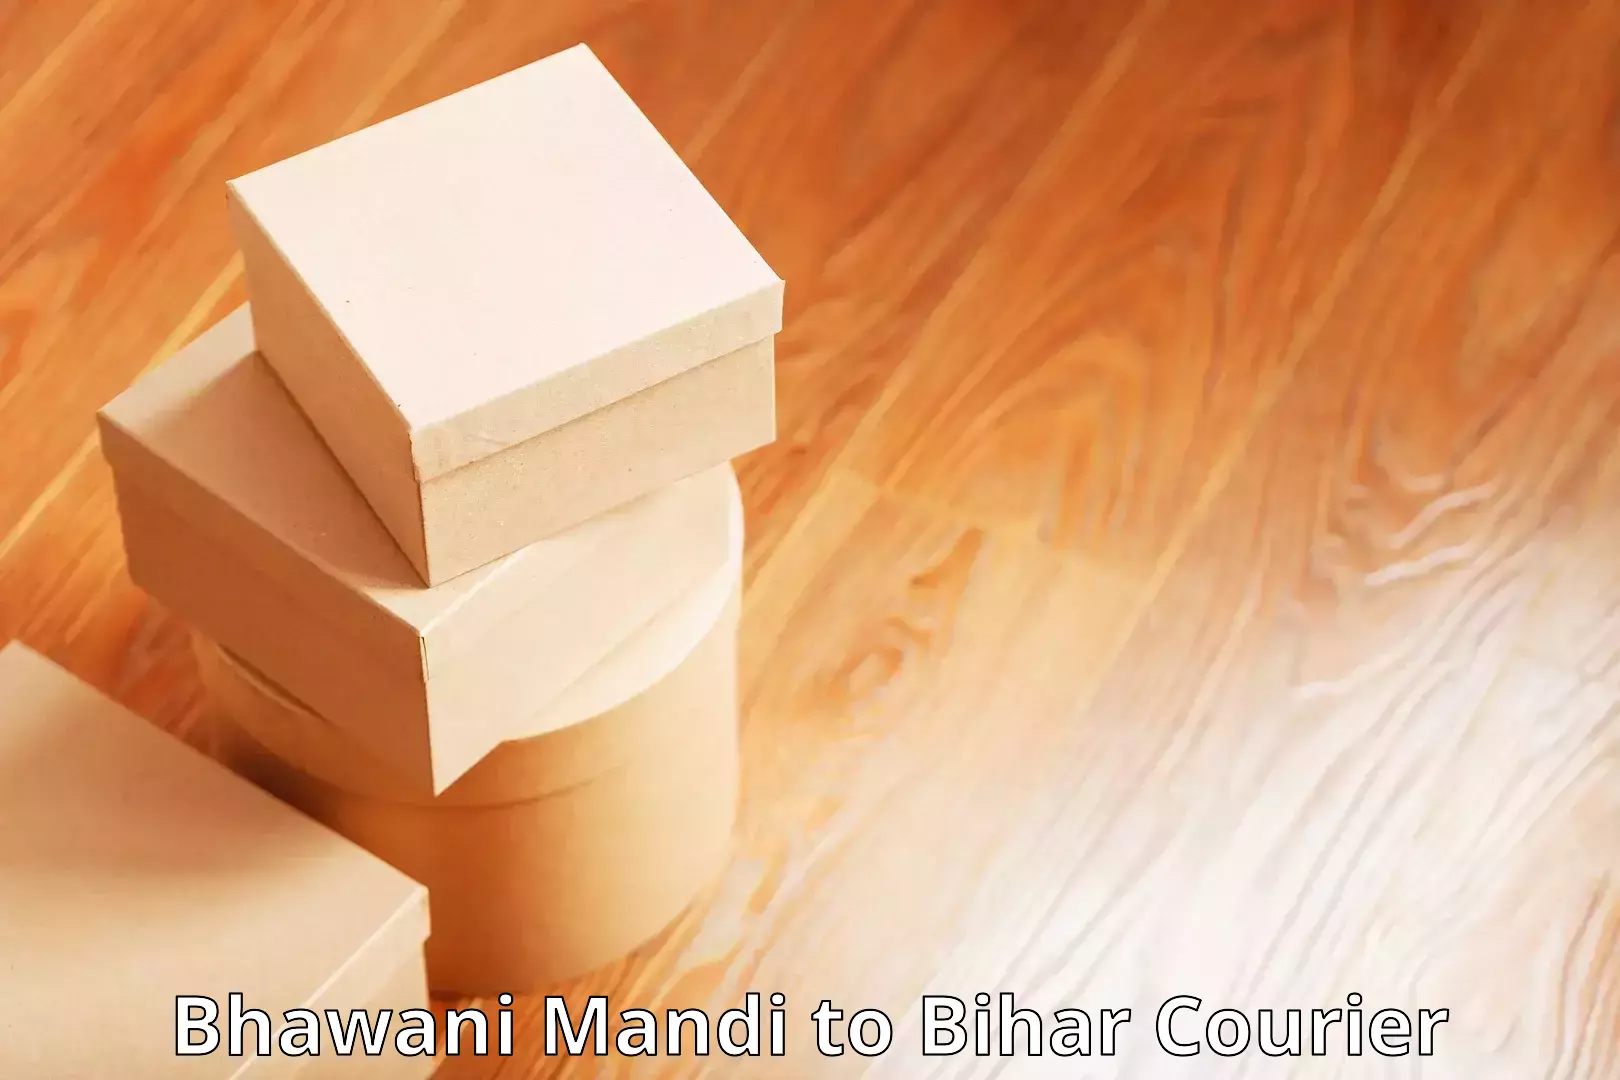 Urgent courier needs Bhawani Mandi to Bihar